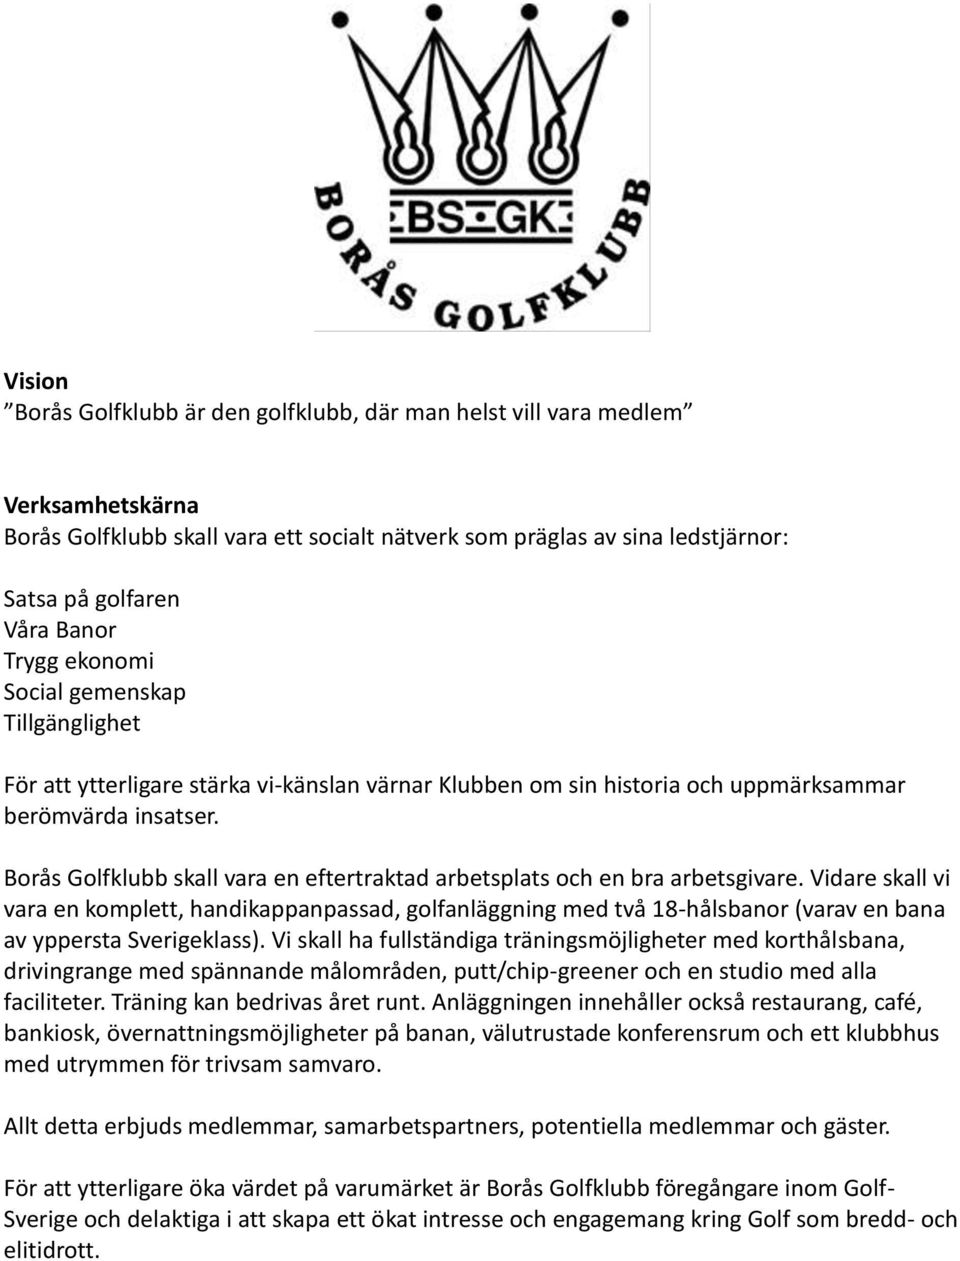 Borås Golfklubb skall vara en eftertraktad arbetsplats och en bra arbetsgivare.